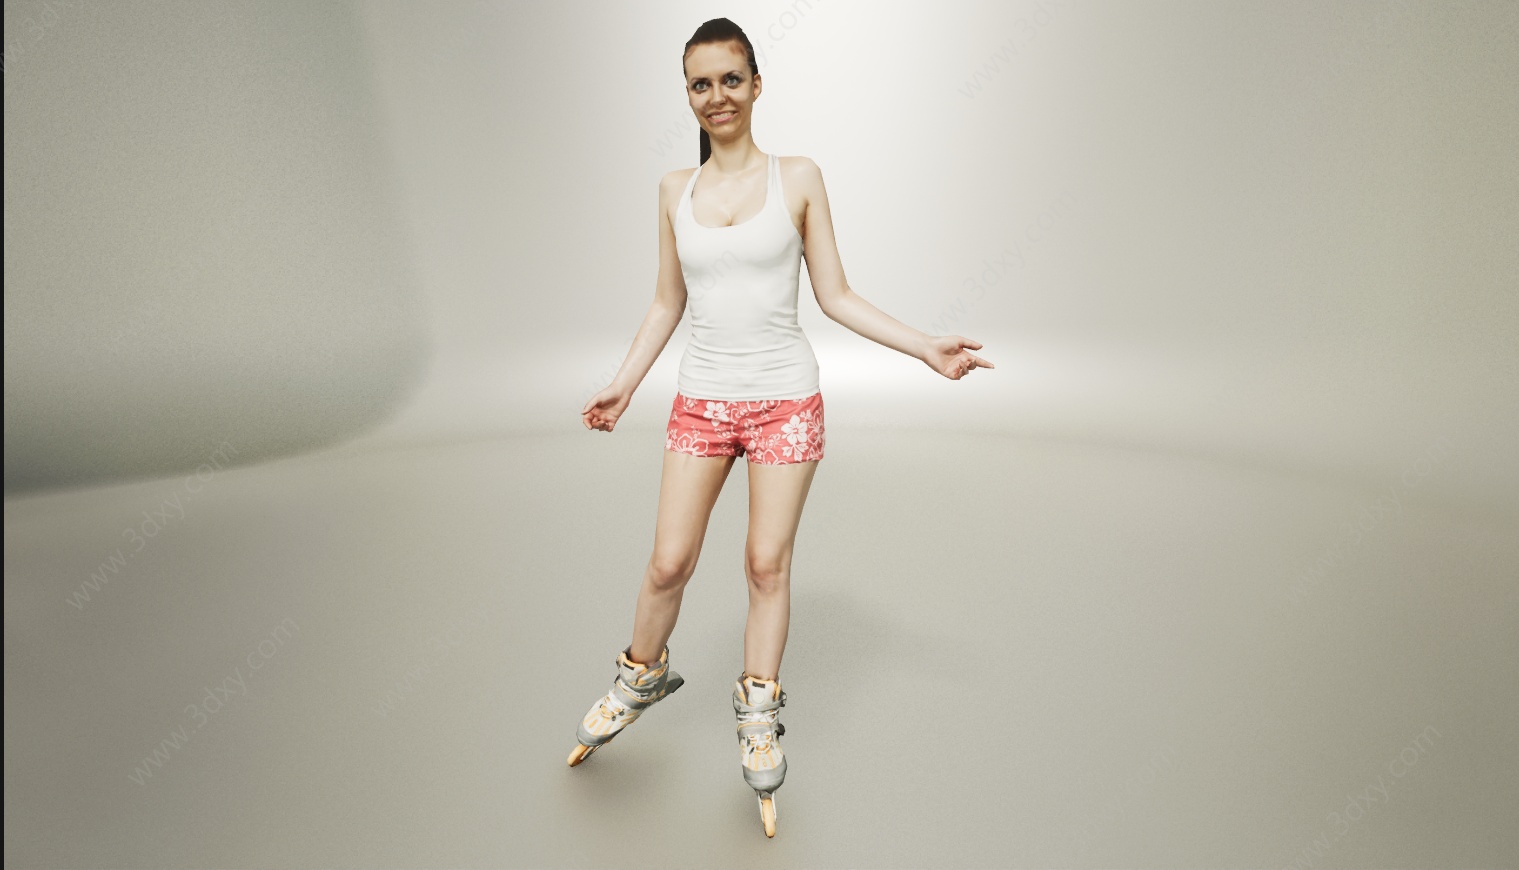 运动滑轮滑女人3D模型